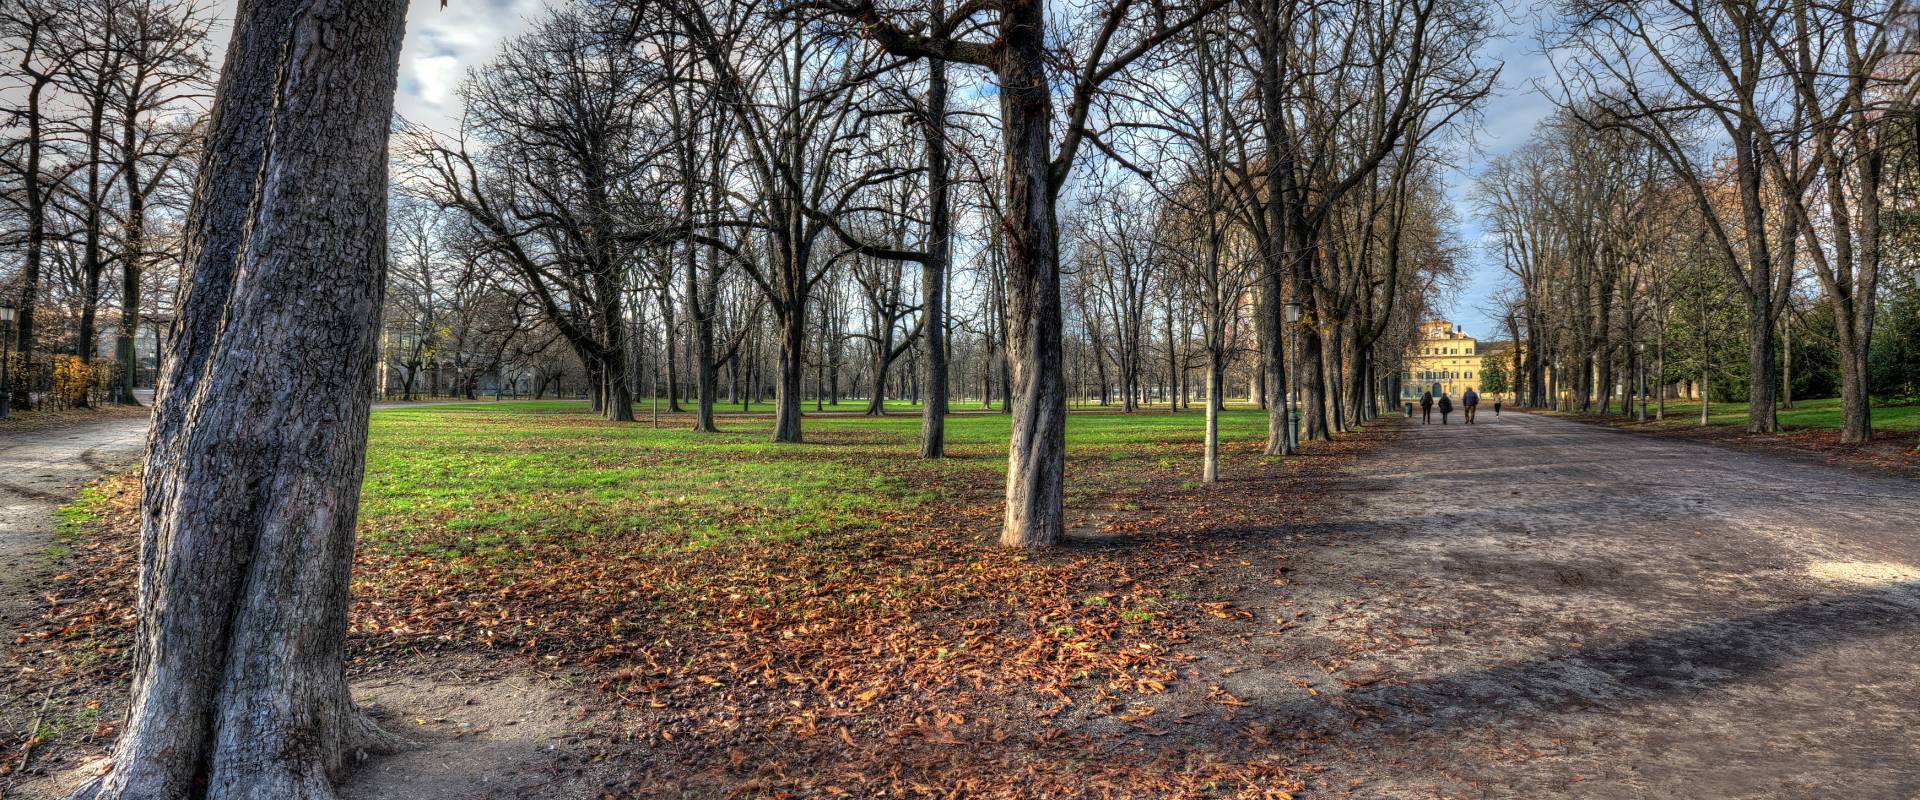 Scorcio del parco ducale di Parma foto di Goethe100